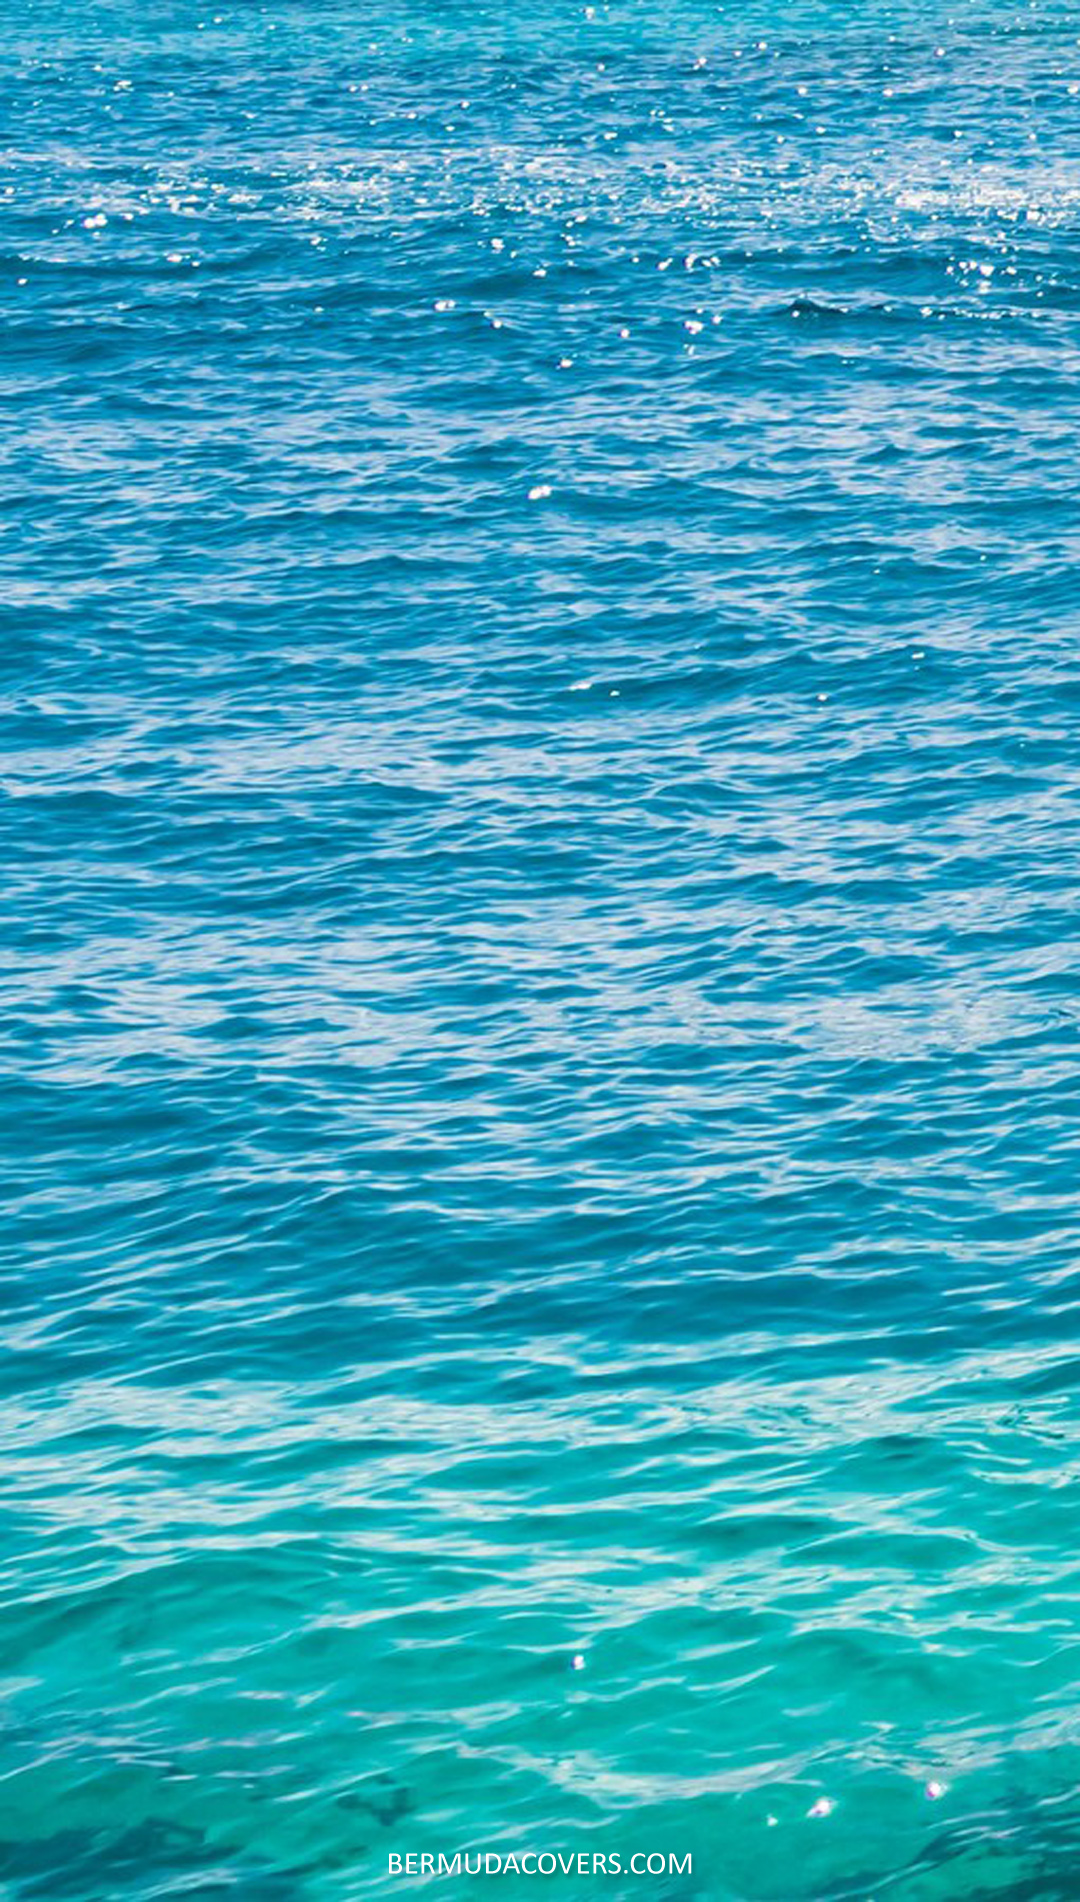 Bermuda Rippling Waters Facebook Cover & Phone Wallpaper 